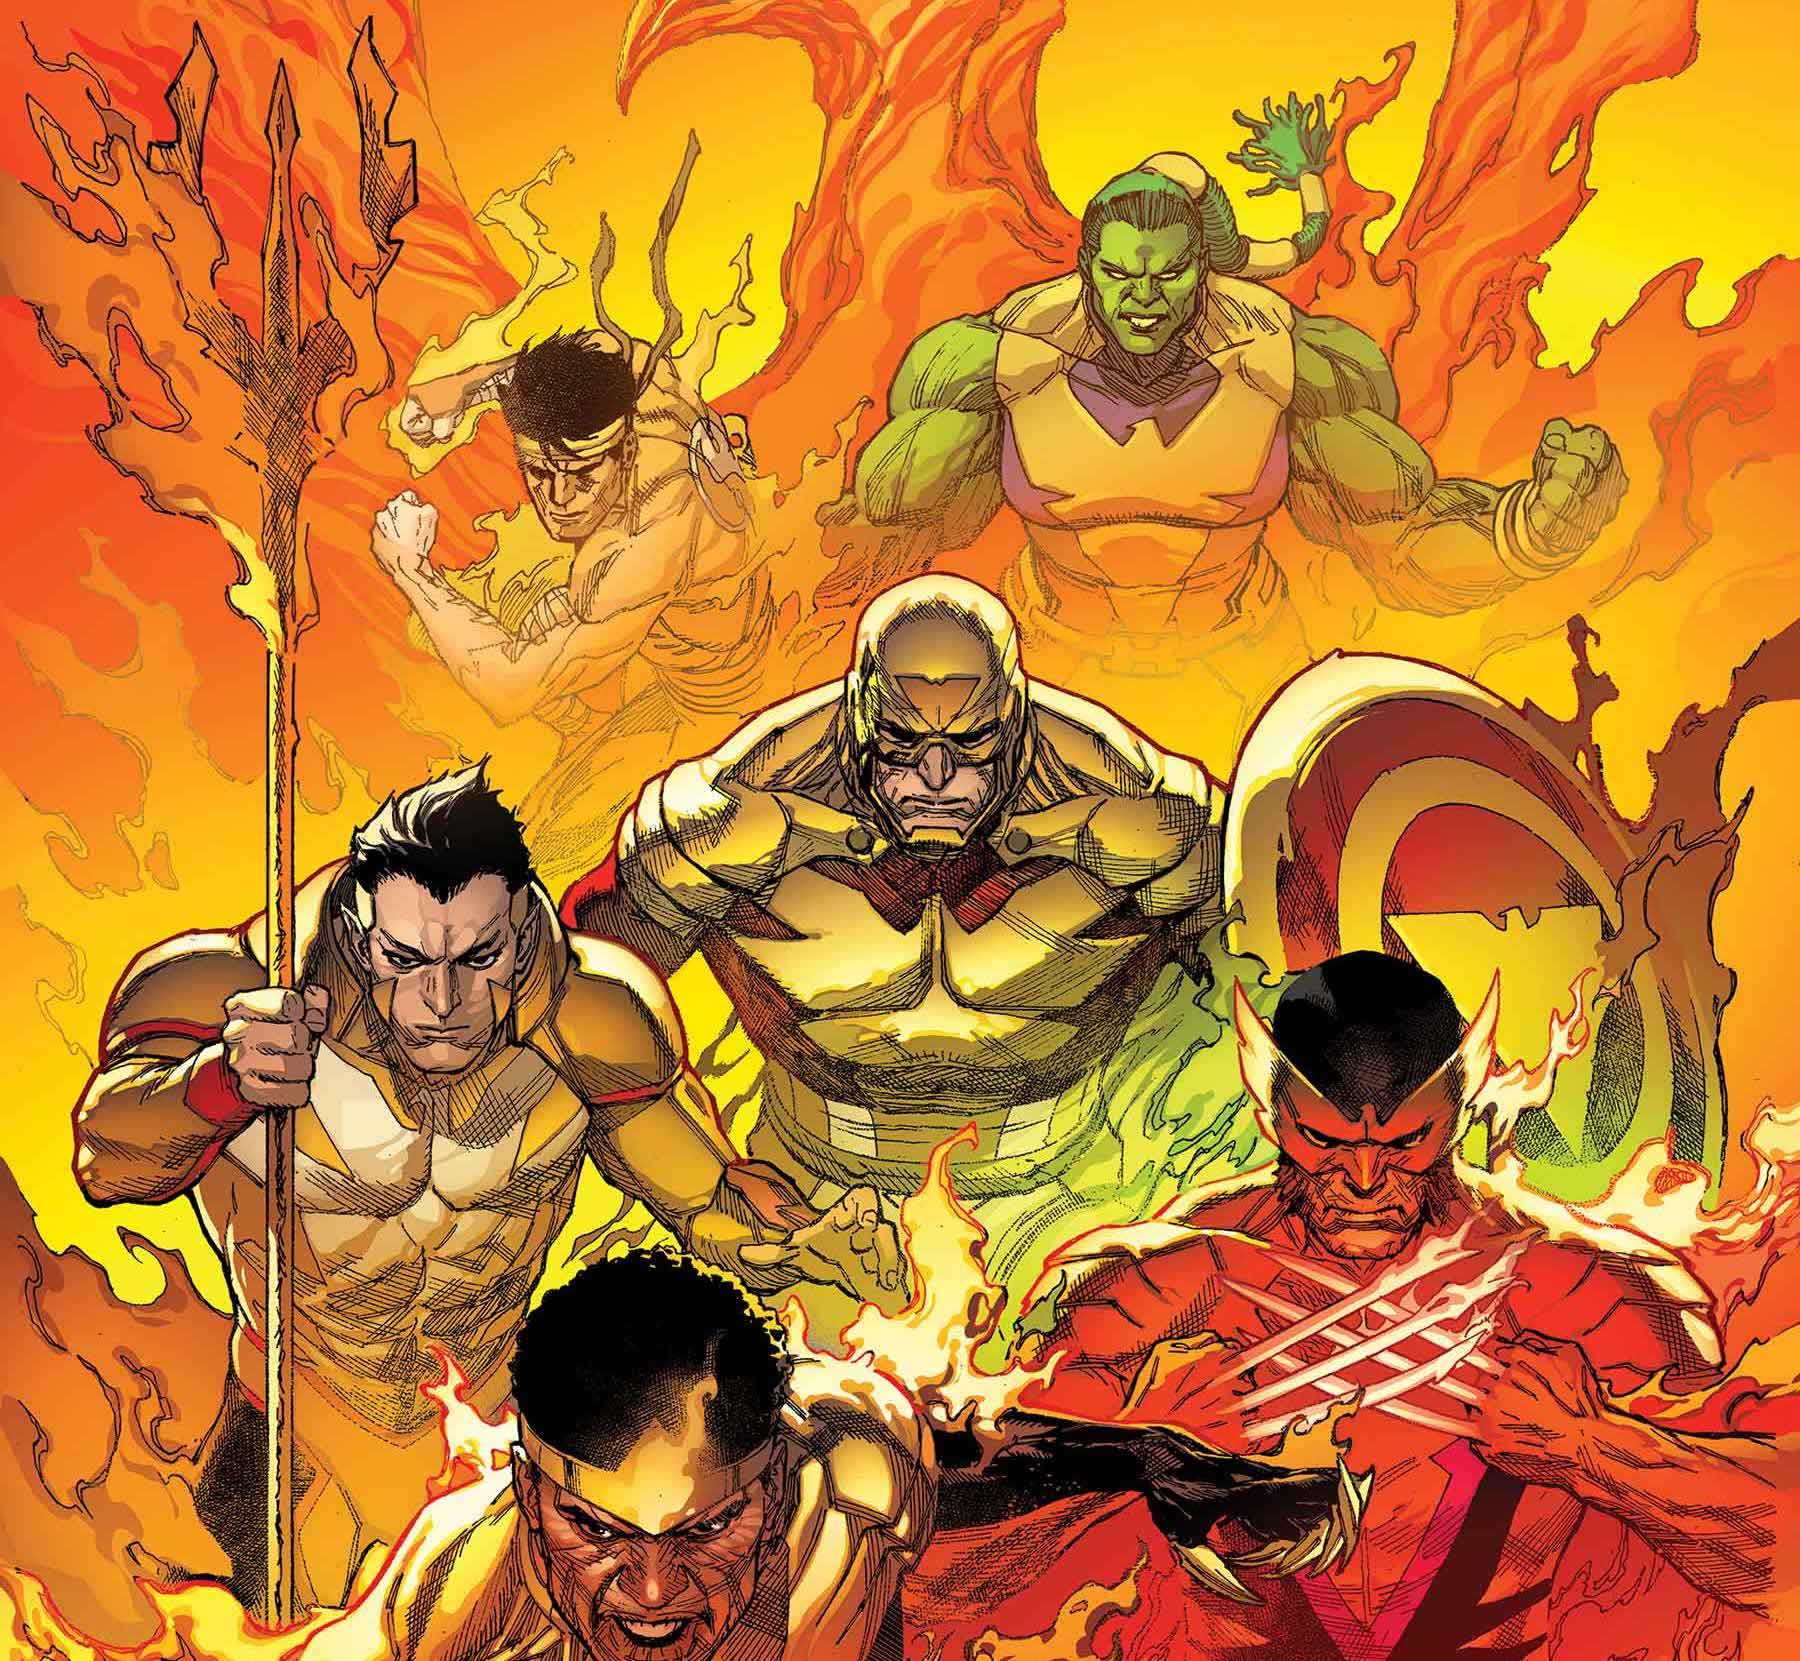 'Avengers' #40 review: 'Enter the Phoenix' Part 1